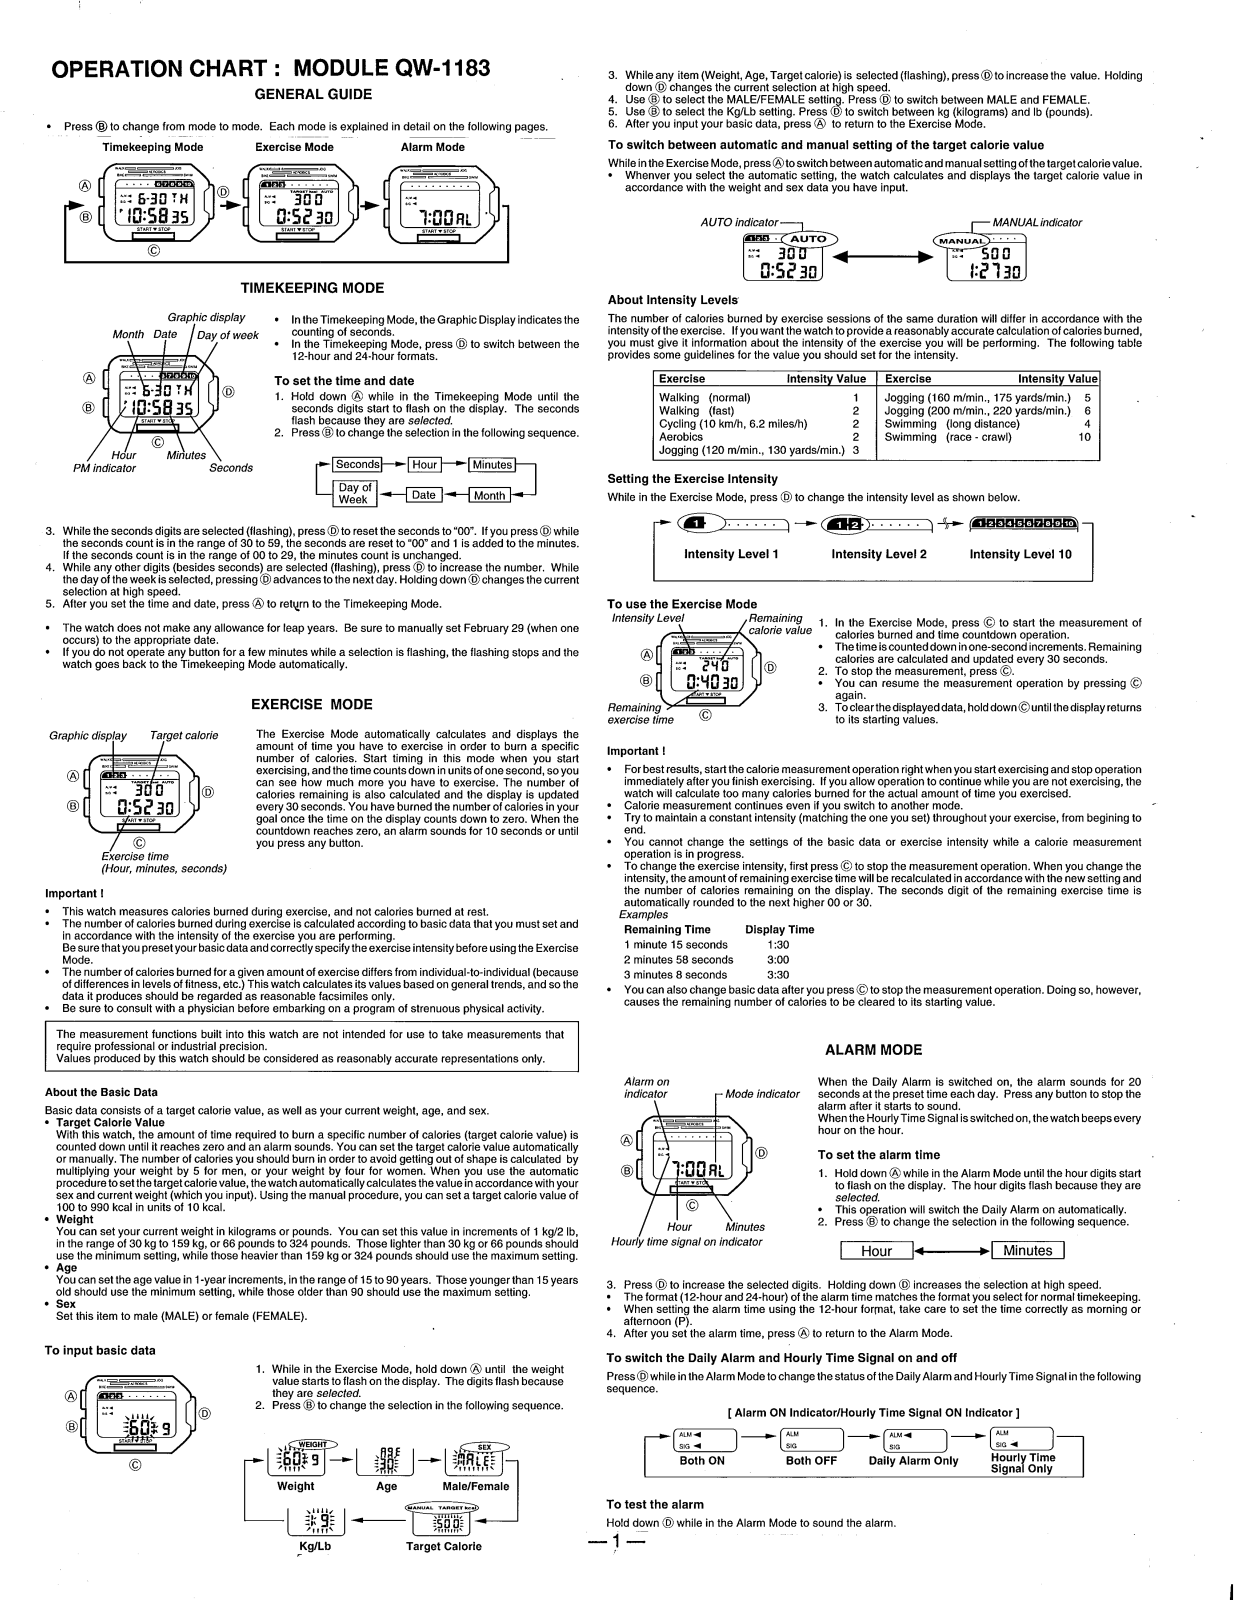 Casio QW-1183 User Manual